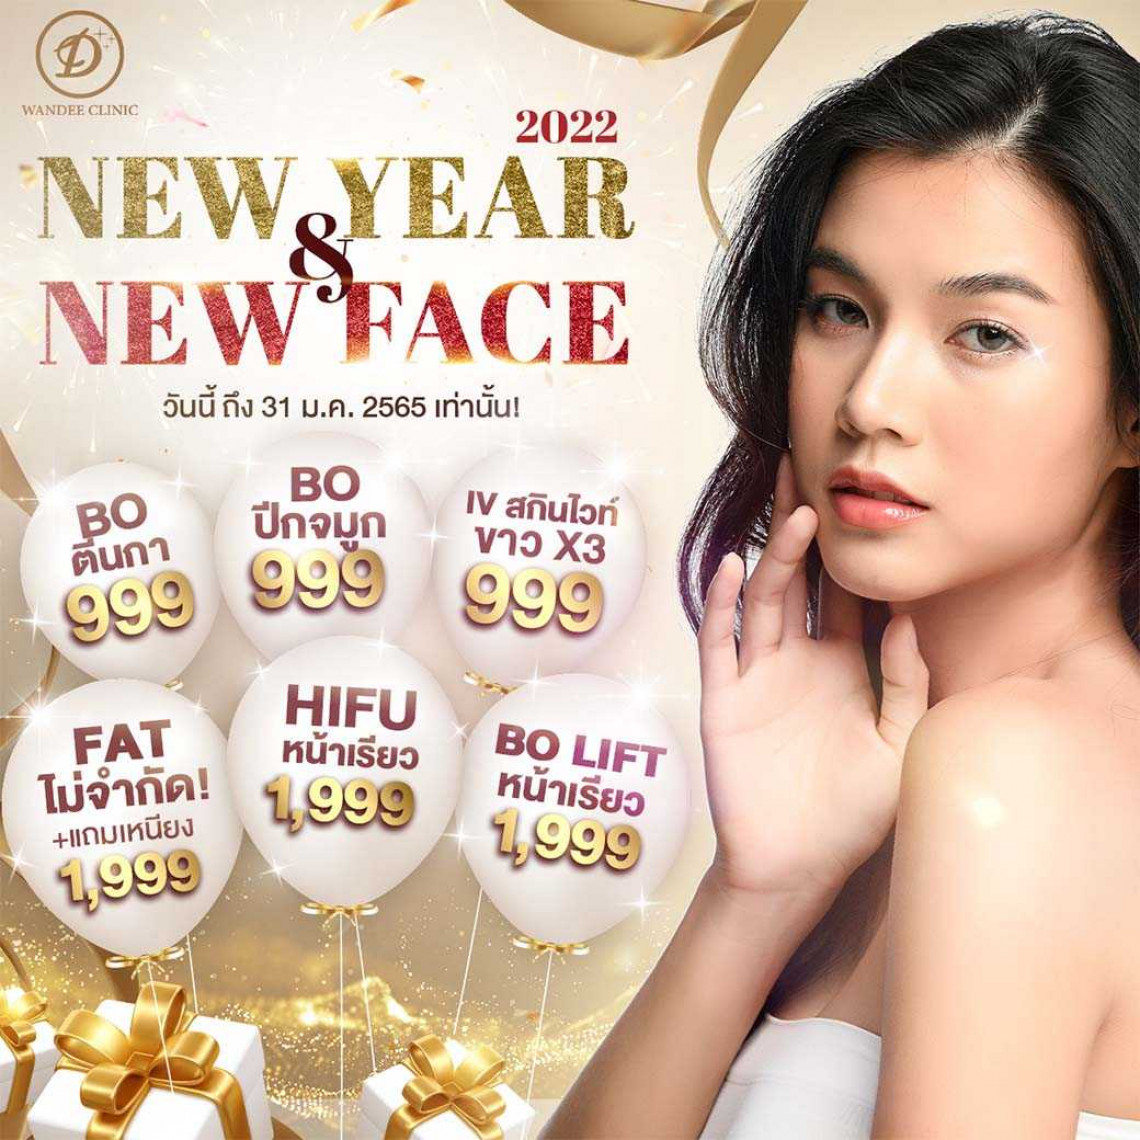 New Year & New Face ปีใหม่หน้าใหม่